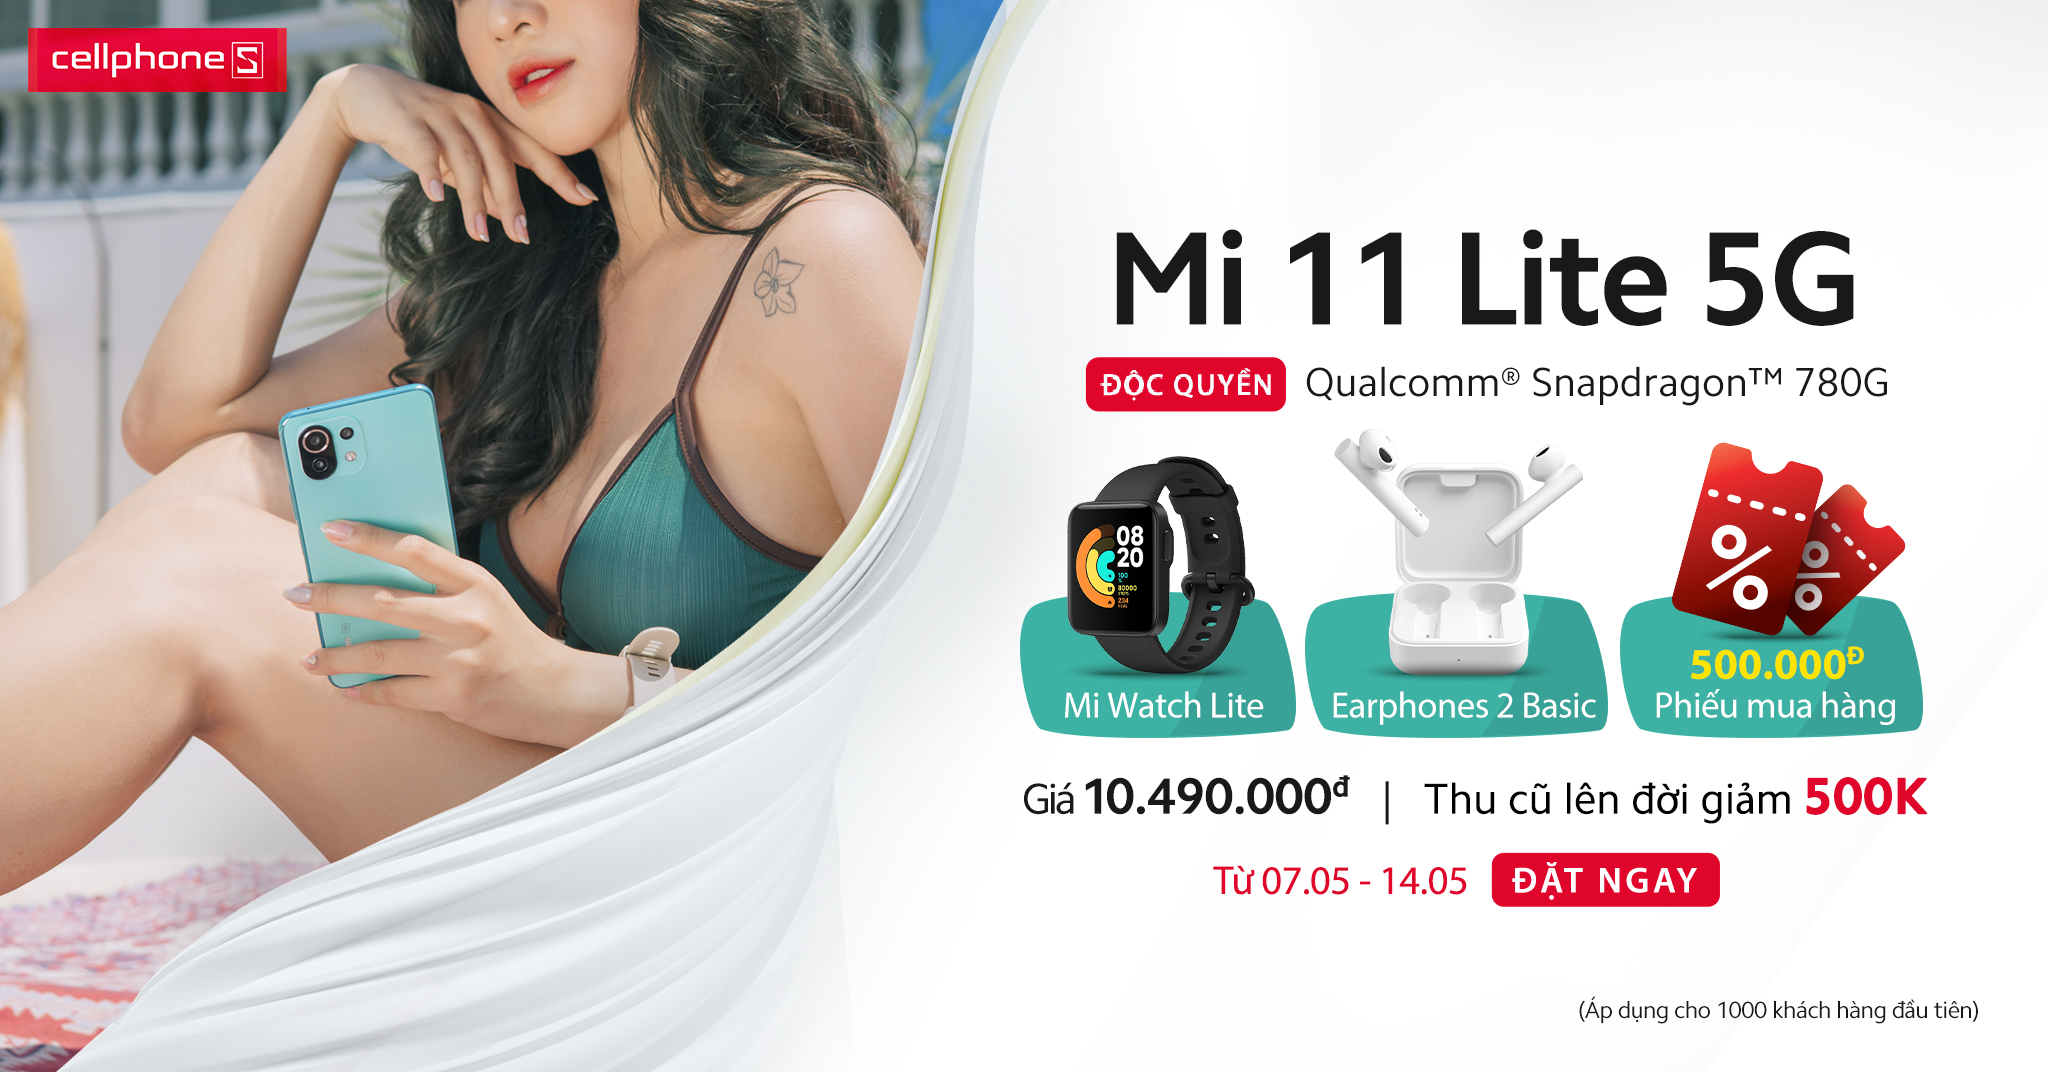 Mi 11 Lite 5G mở đặt trước, quà hơn 4 triệu, độc quyền CellphoneS